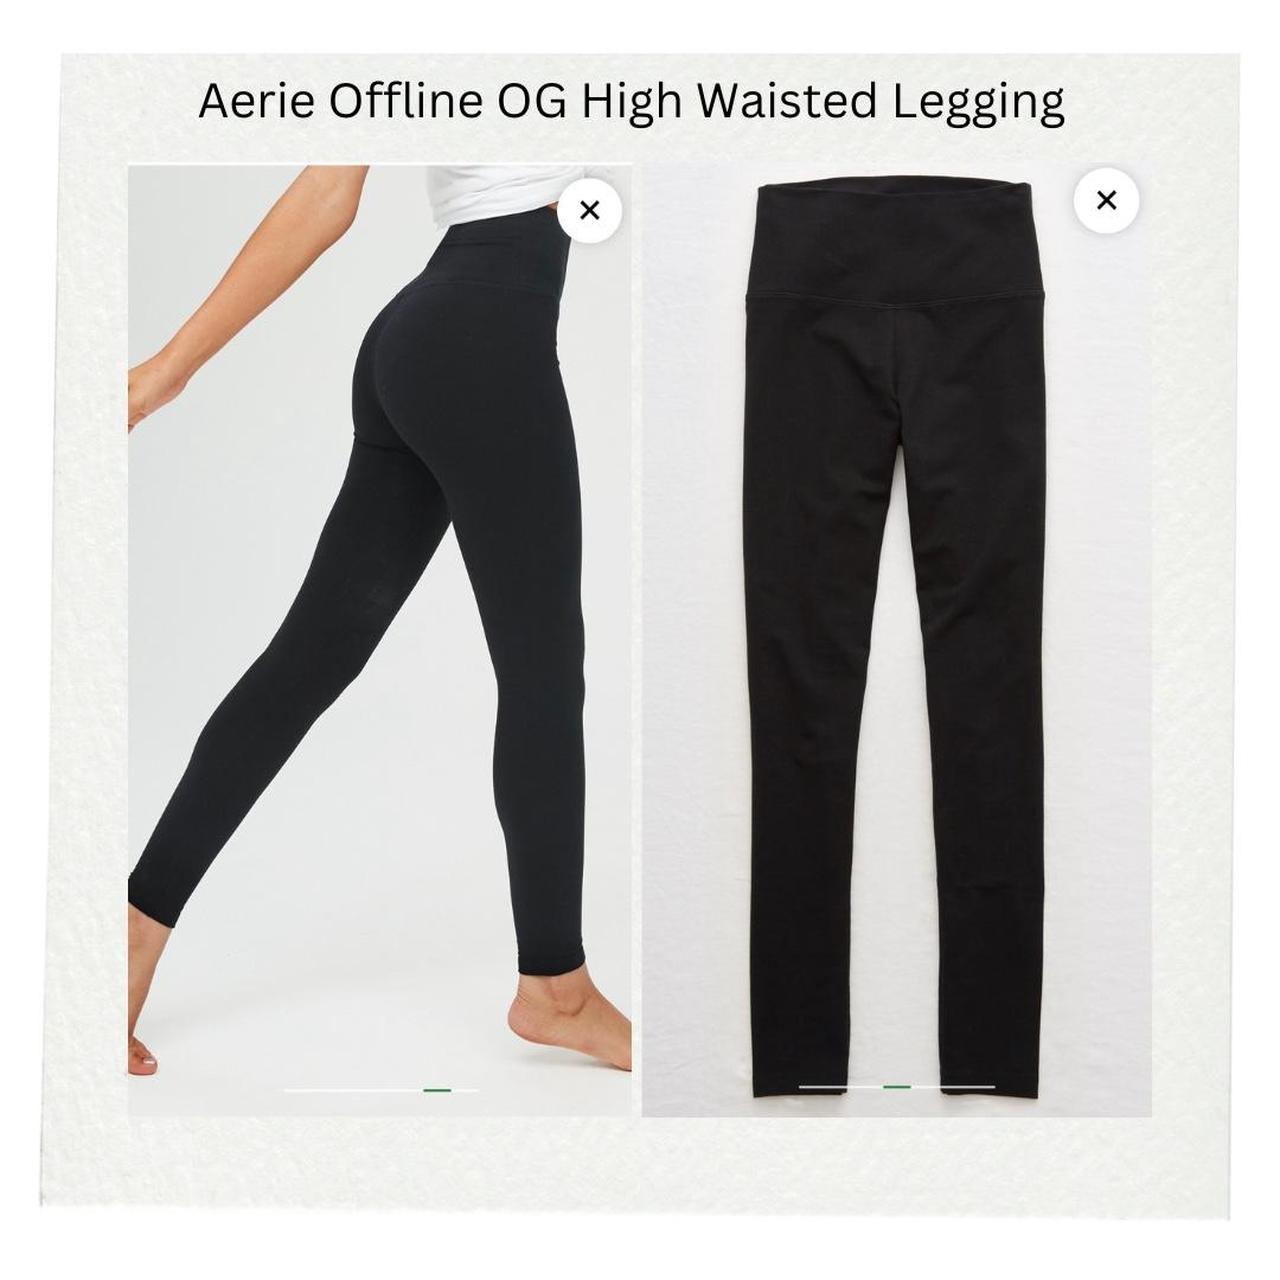 OFFLINE By Aerie OG High Waisted Legging